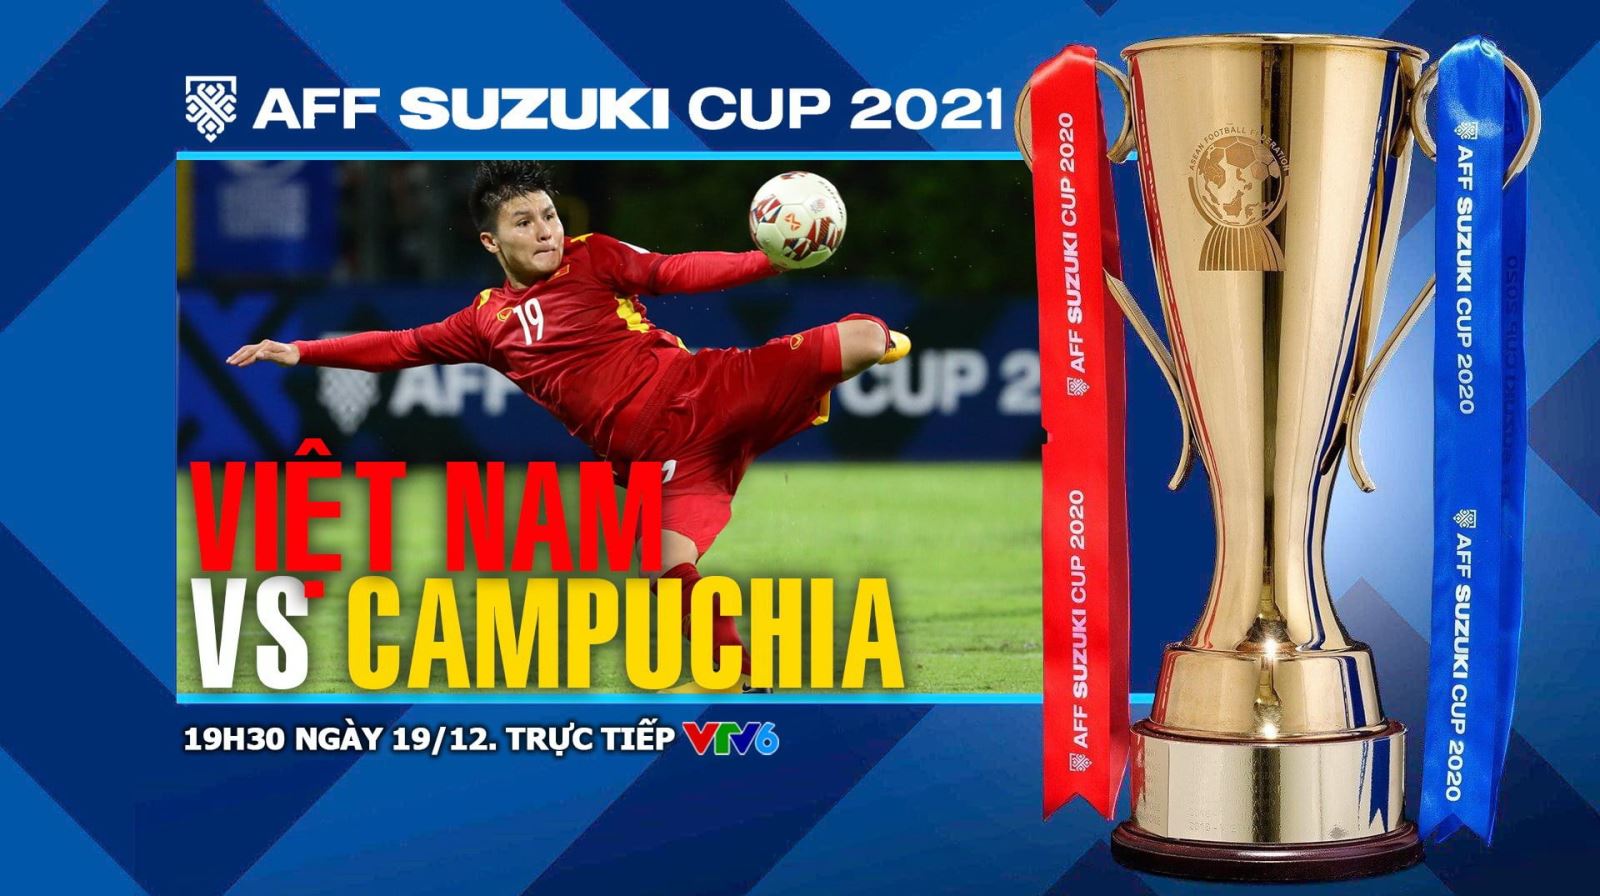 Soi kèo nhà cái Việt Nam vs Campuchia. Nhận định, dự đoán bóng đá AFF Cup 2021 (19h30, 19/12)